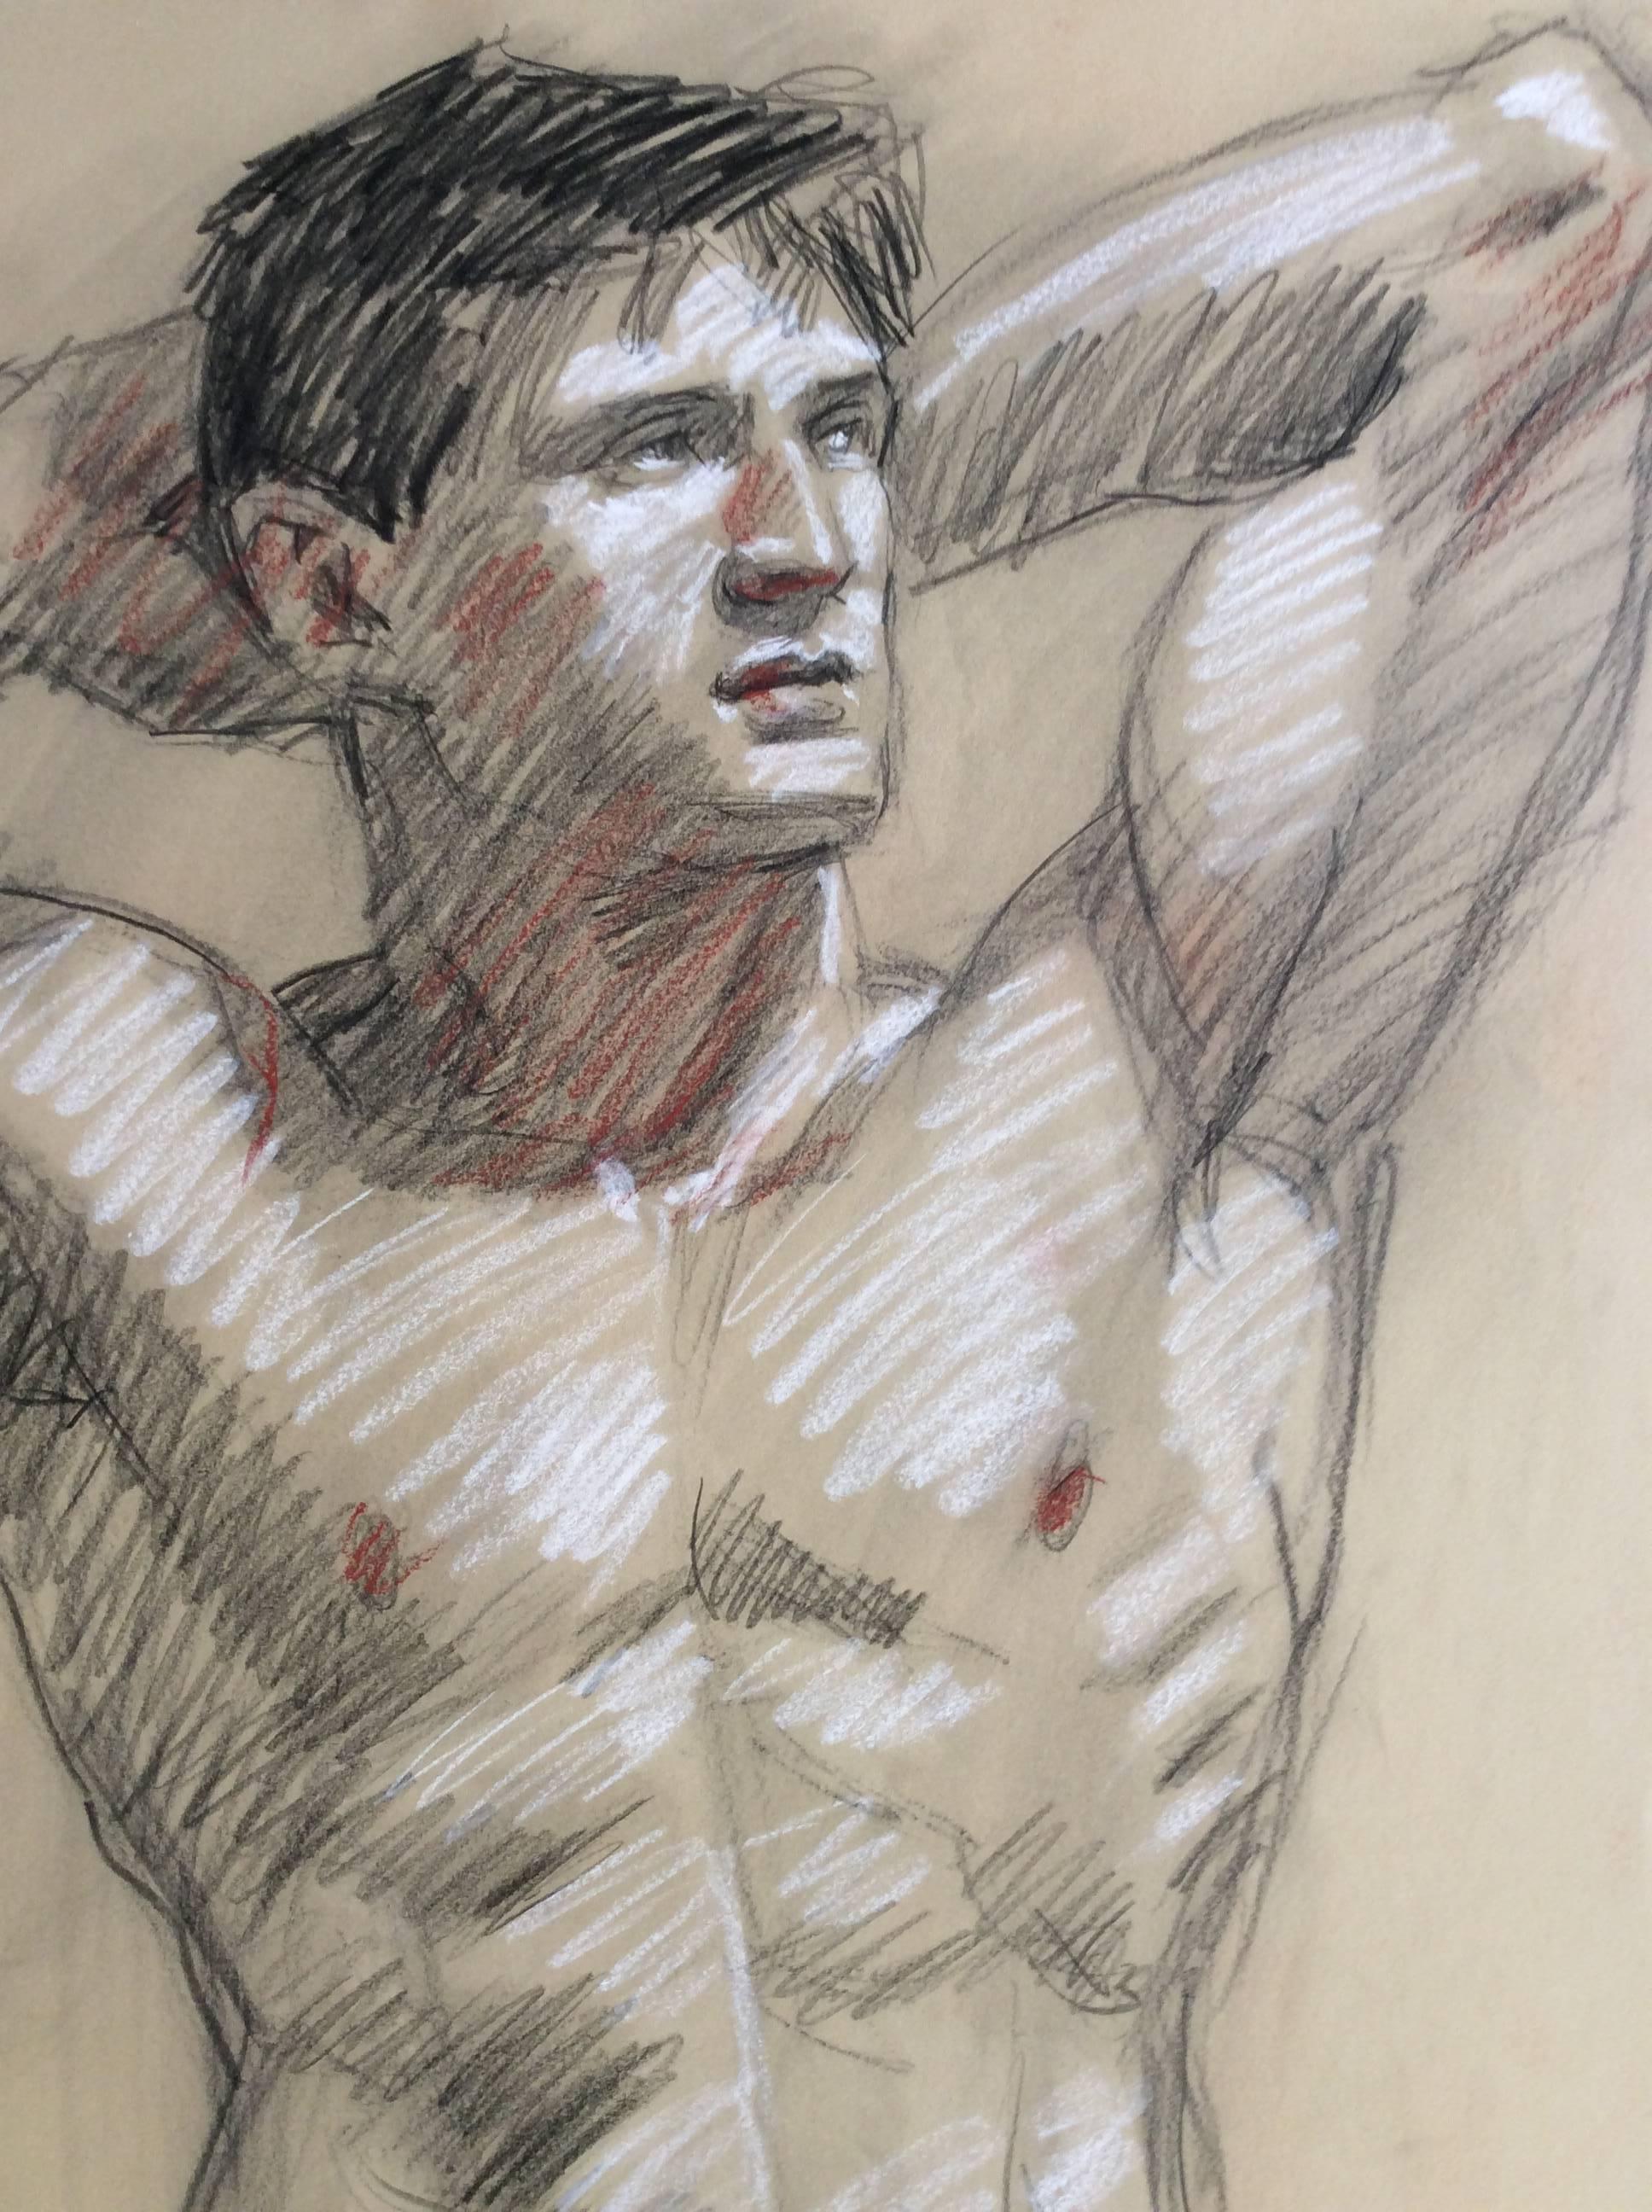 MB 821 A (zeitgenössische männliche nackte figurative Zeichnung, Kohle auf Papier) – Art von Mark Beard